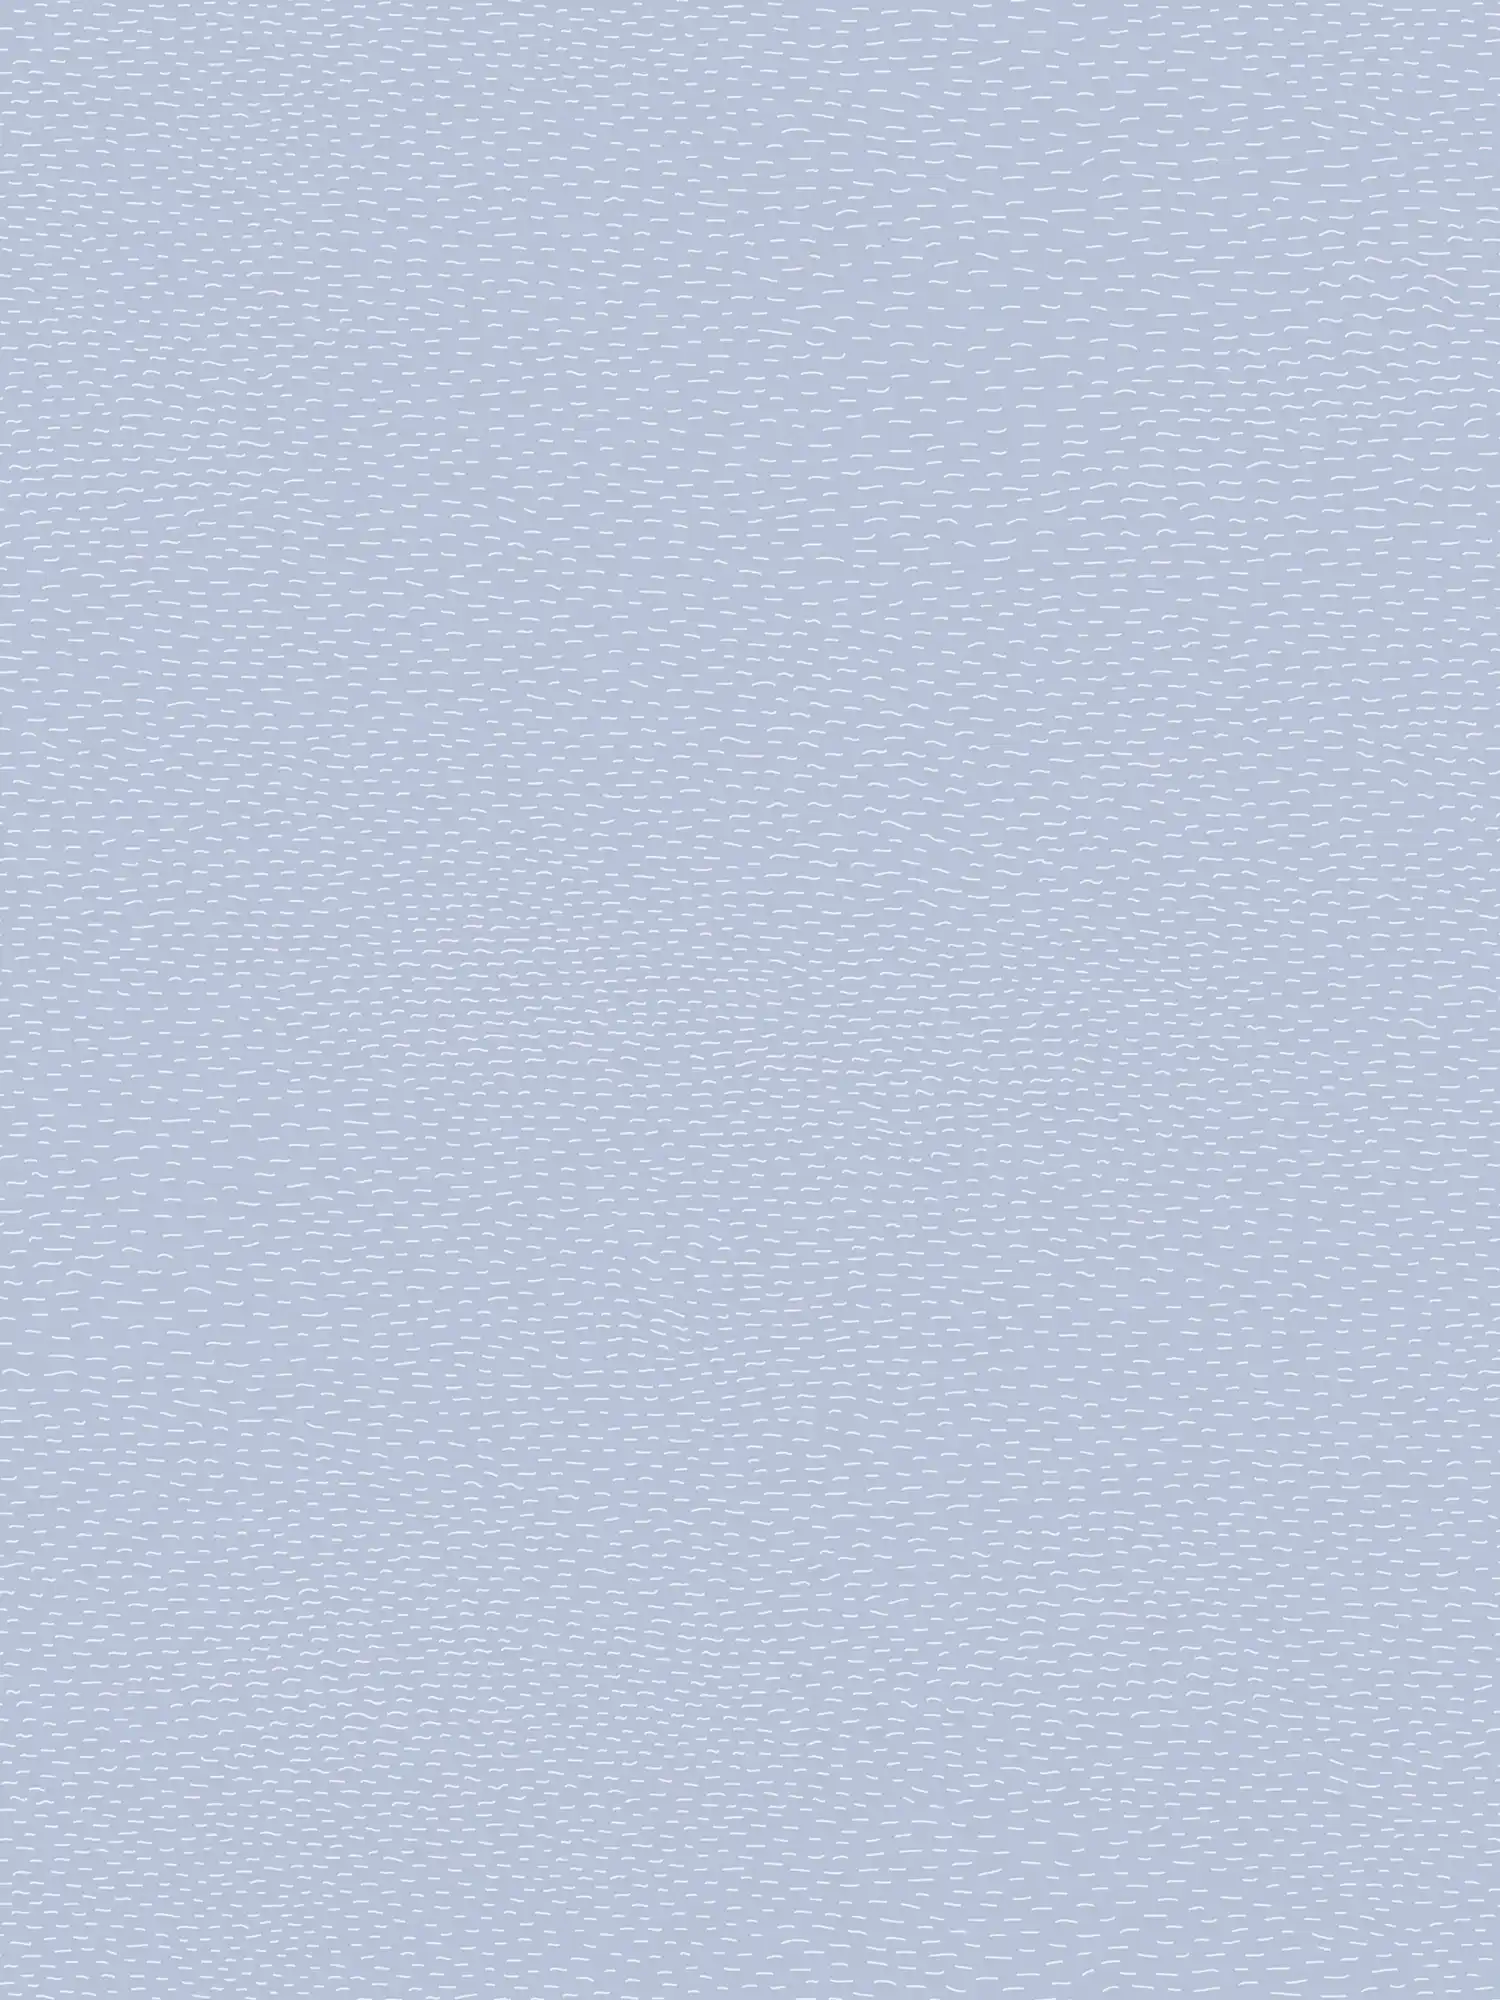 Papier peint chambre enfants traits horizontaux - bleu, gris, blanc
